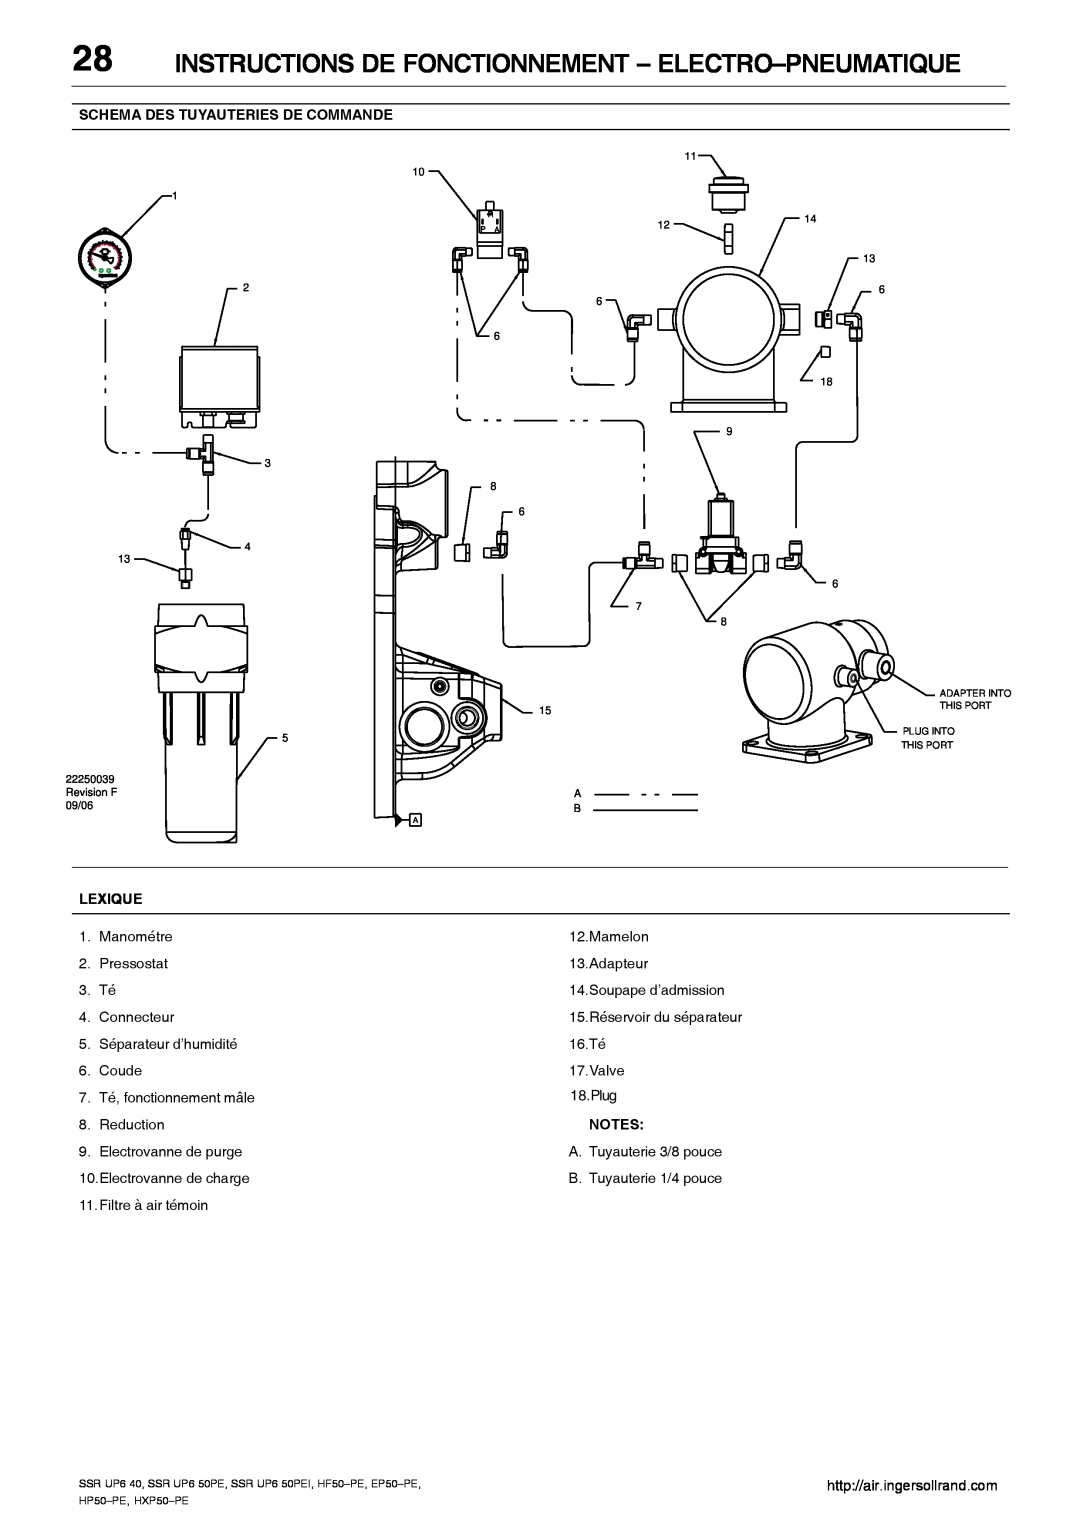 Ingersoll-Rand SSR UP6 40, SSR UP6 50PE Instructions De Fonctionnement - Electro-Pneumatique, 15.Réservoir du séparateur 